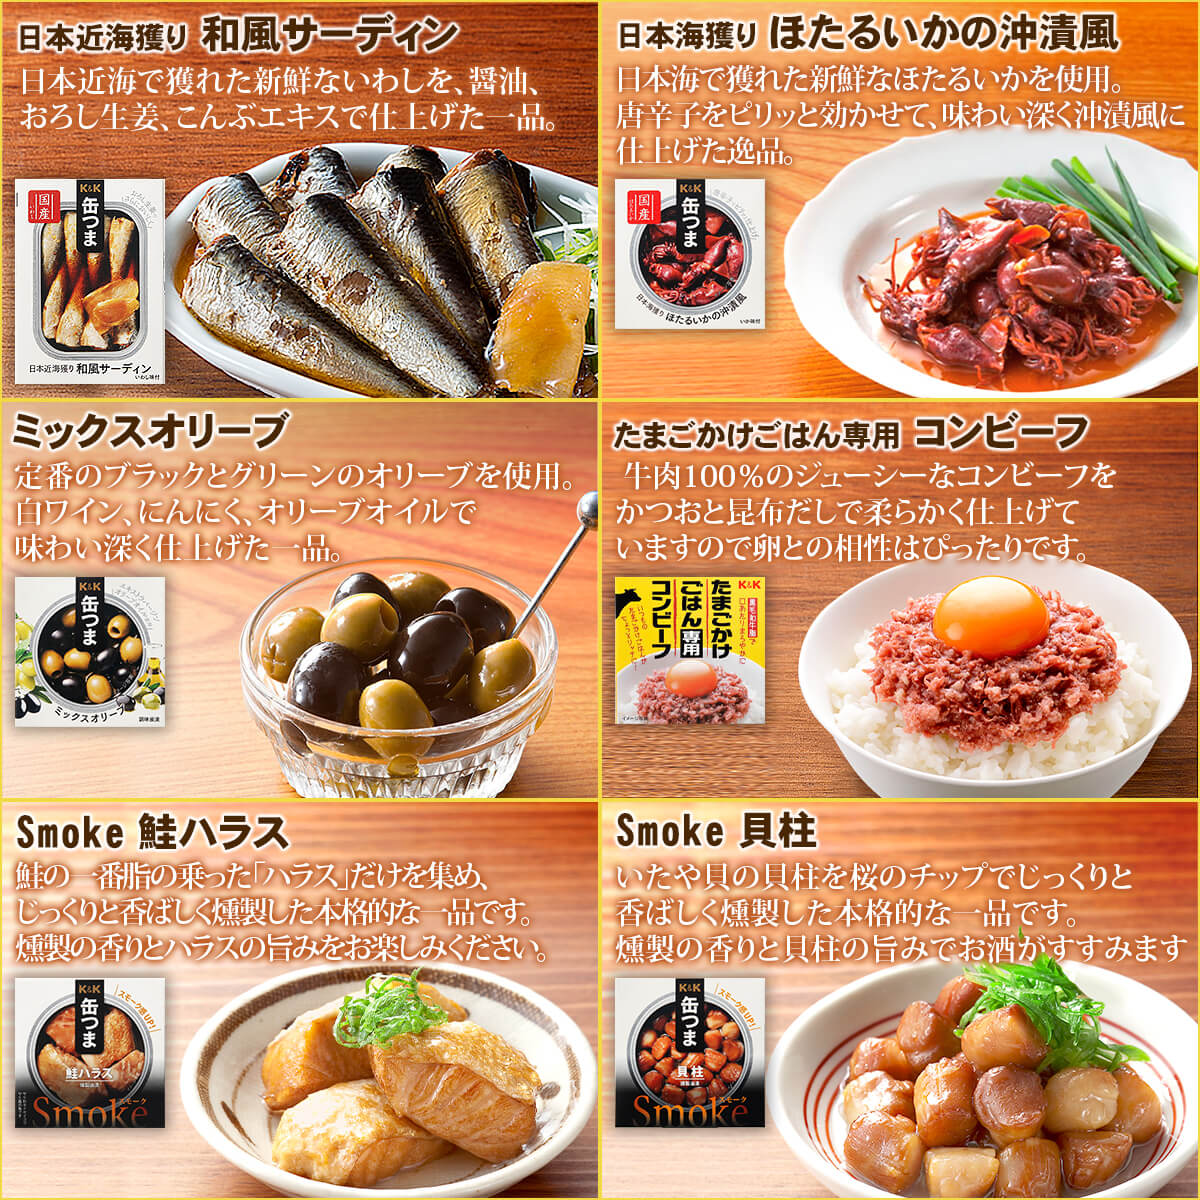 缶つま 缶詰 おつまみ 選べる 贅沢 10缶 セット K&K 高級 缶詰め 肉 魚 